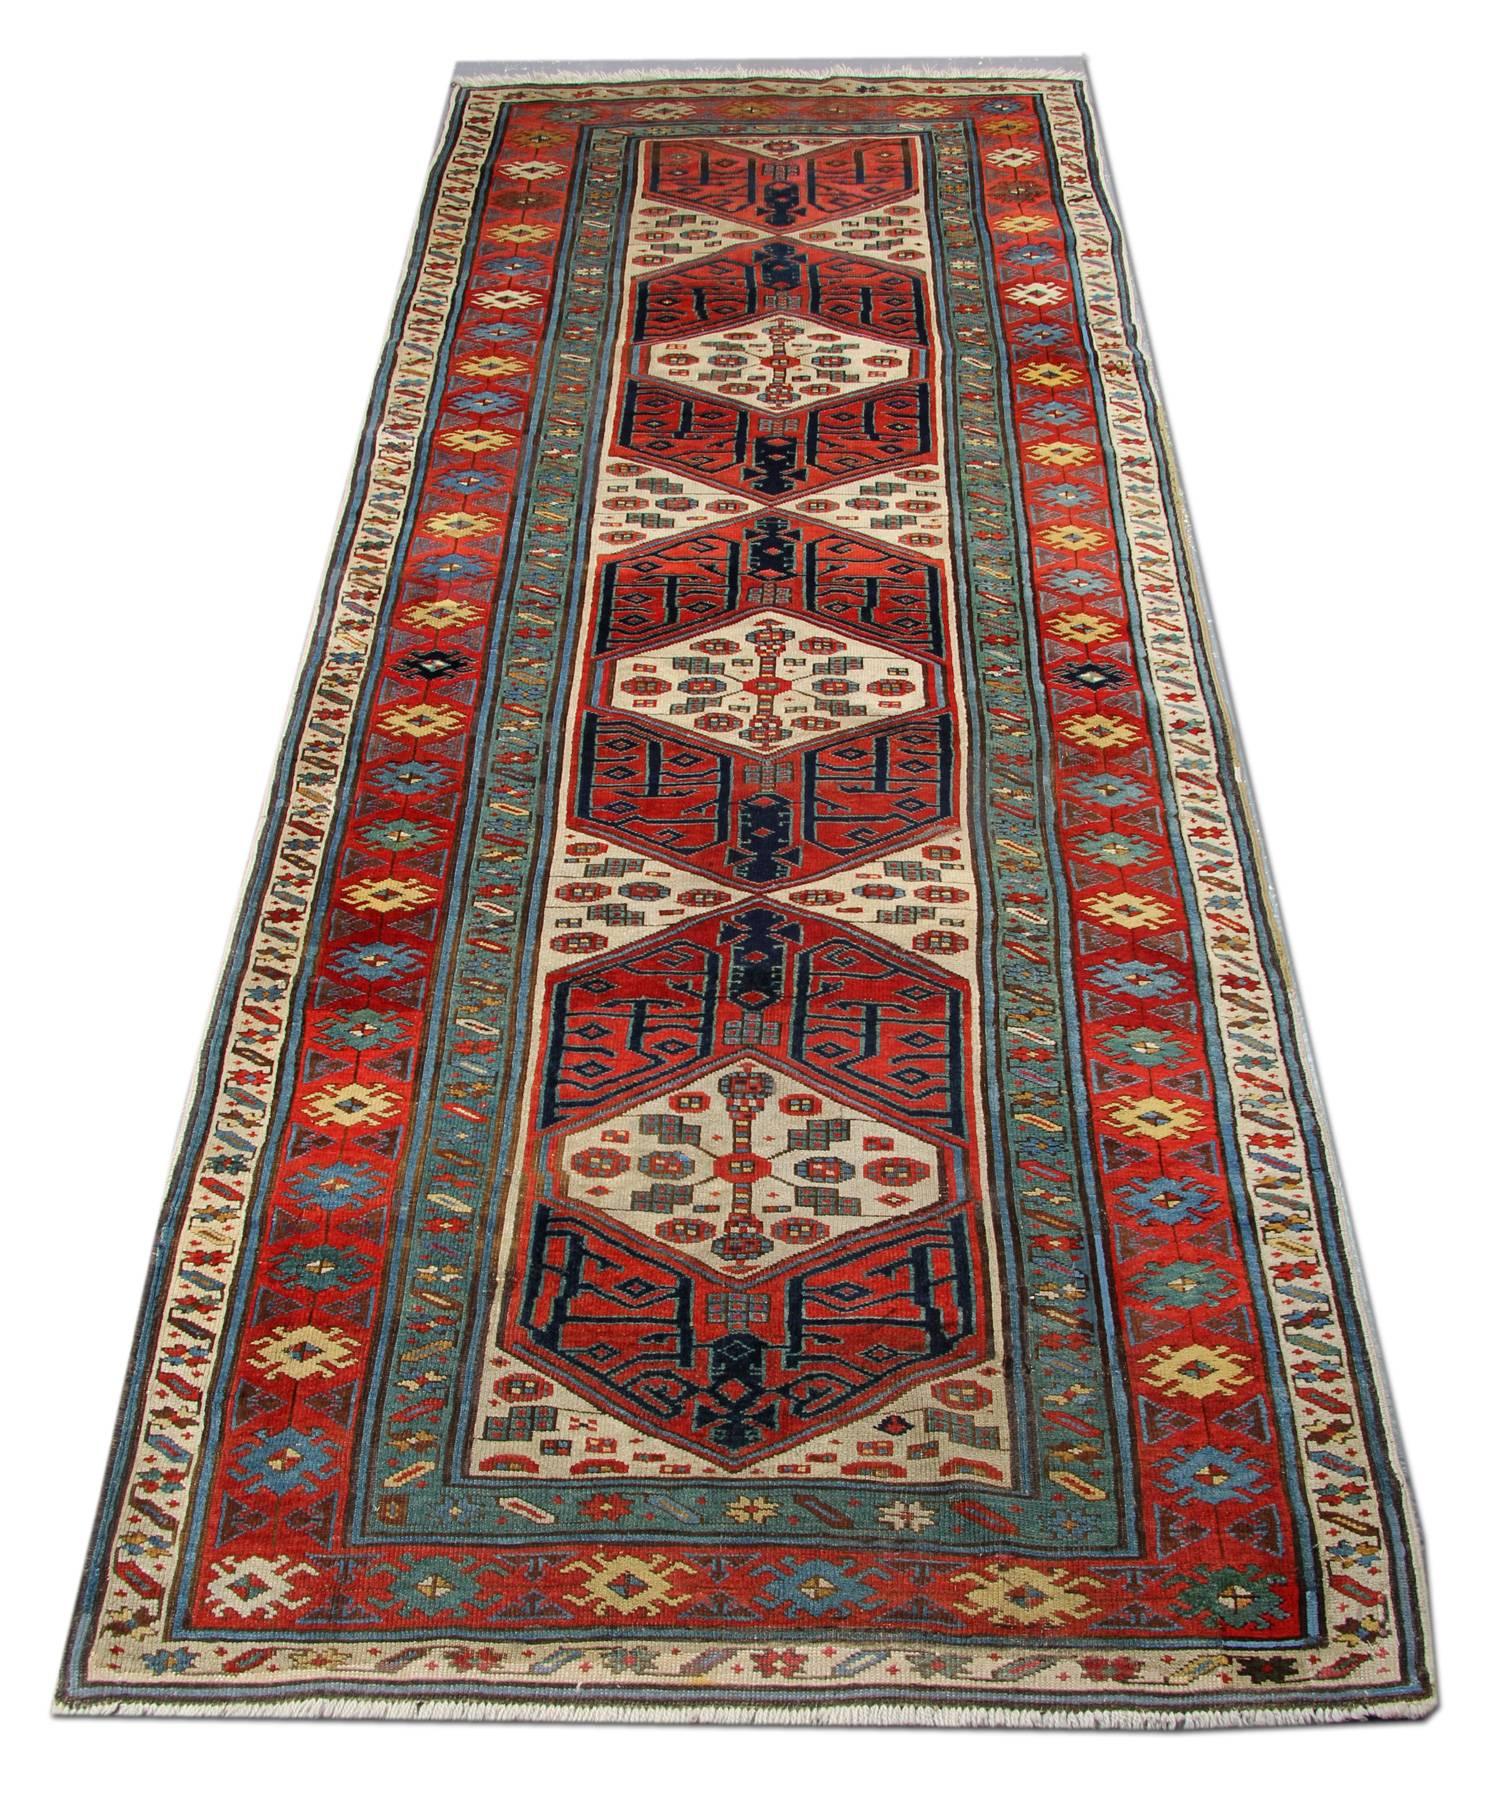 Un tapis antique rare Caucasien Kazak fait à la main du 18ème siècle. Ce tapis présente un motif géométrique inhabituel sur fond de briques rouges. Ce tapis tissé est entouré de multiples motifs floraux et géométriques contrastés. Fait de poils de